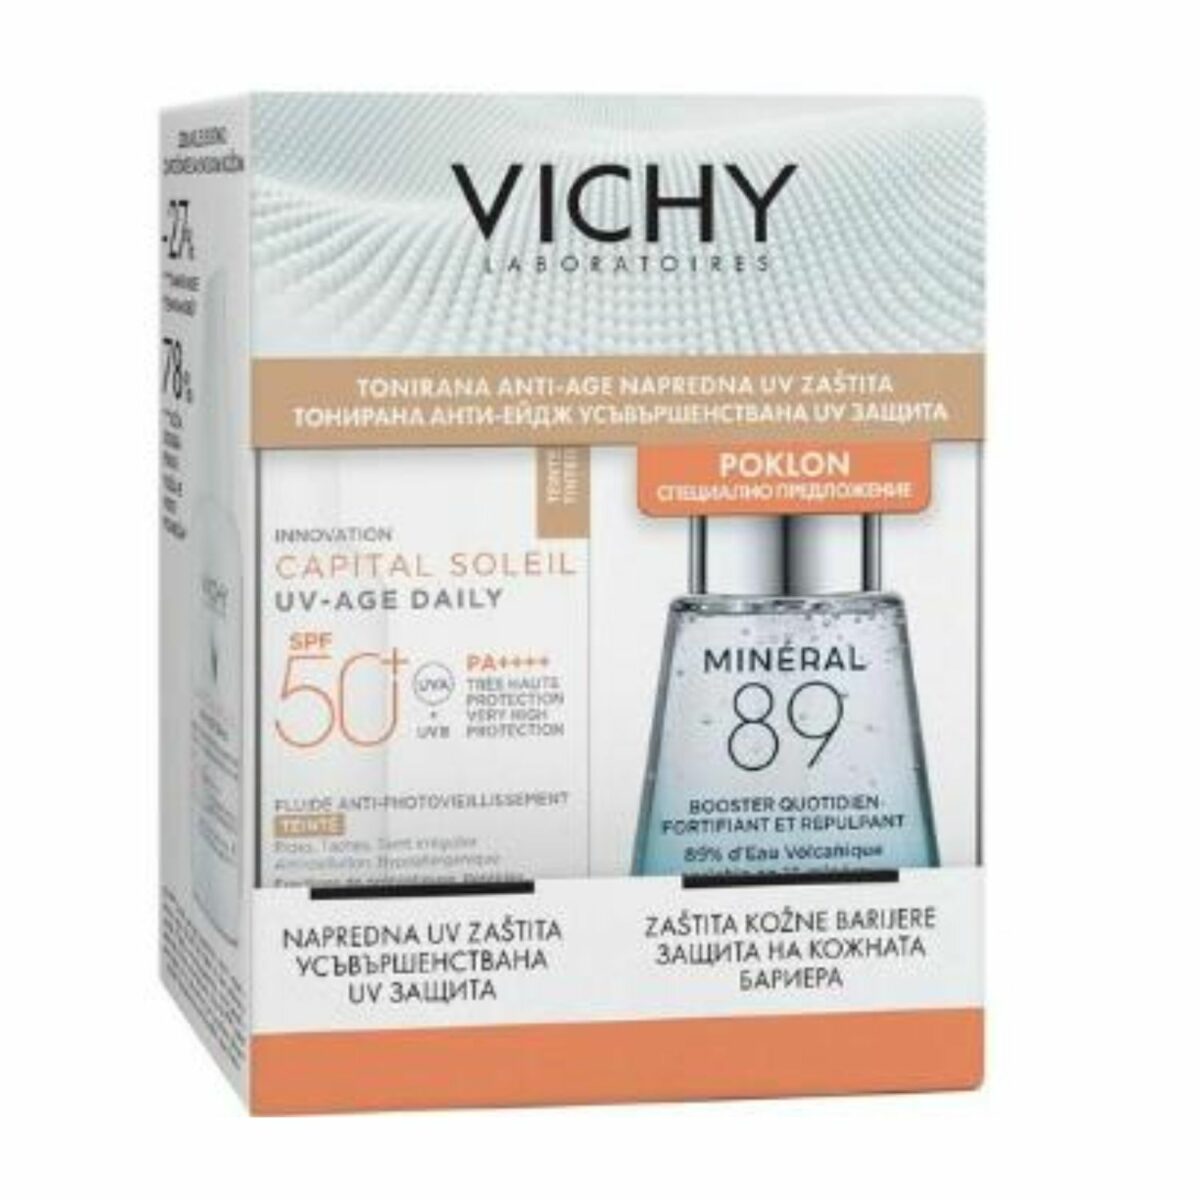 Vichy Capital Soleil tonirani krem UV Dayli 50+ 40ml + 89 Mineral booster 30ml promo set